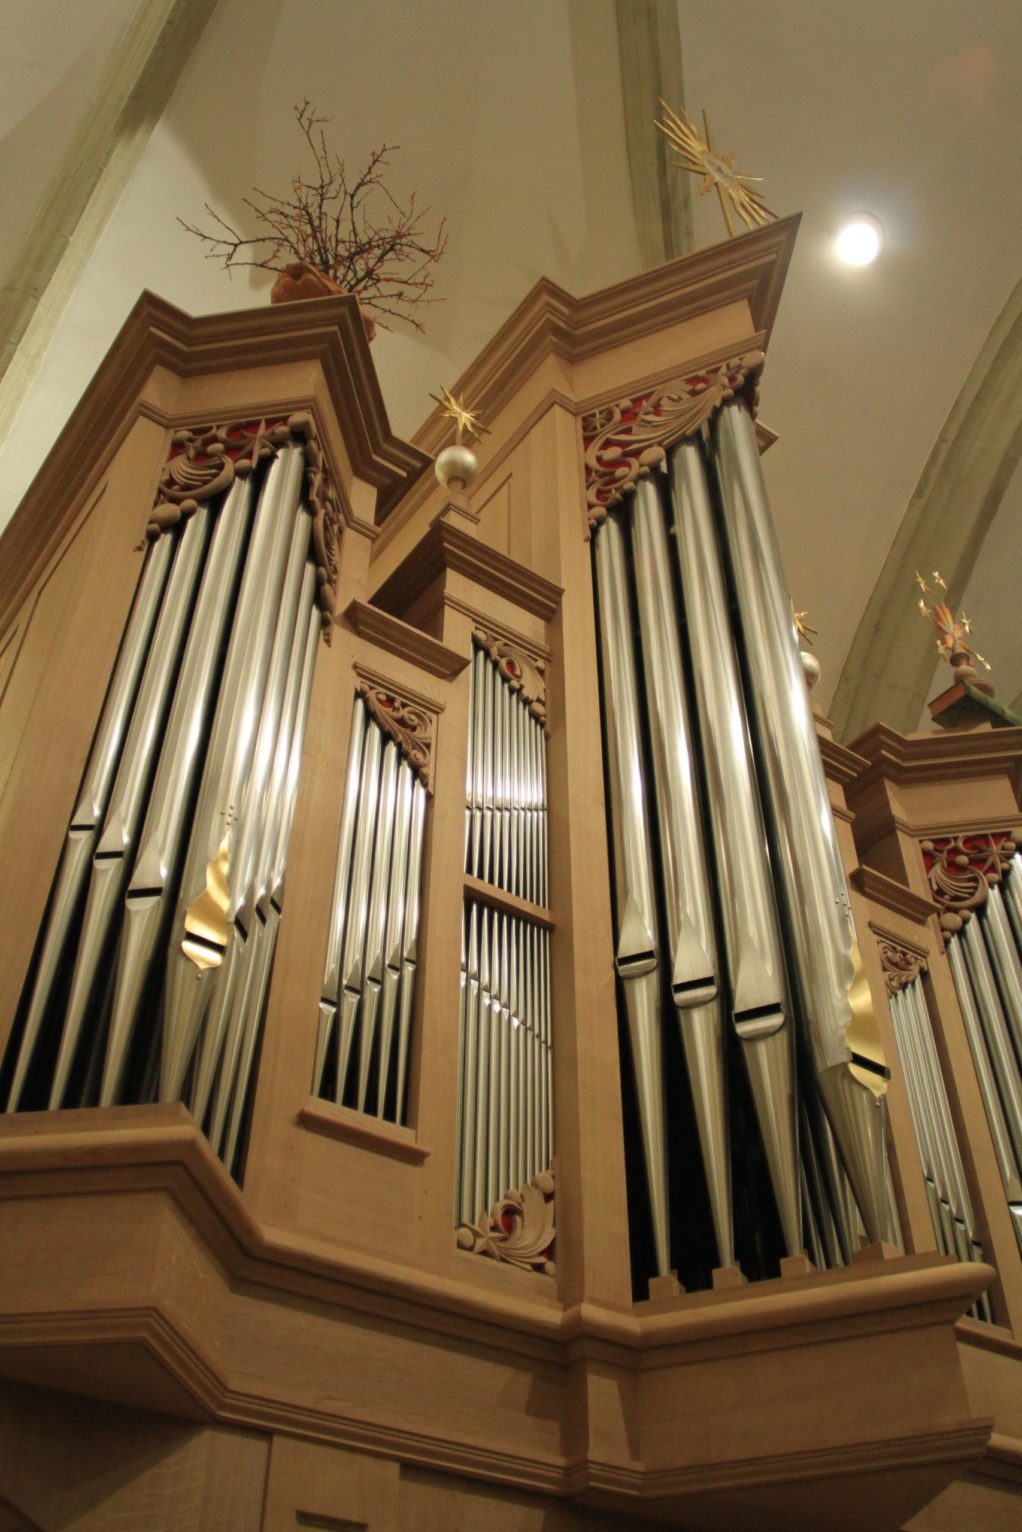 Chœur et orgue